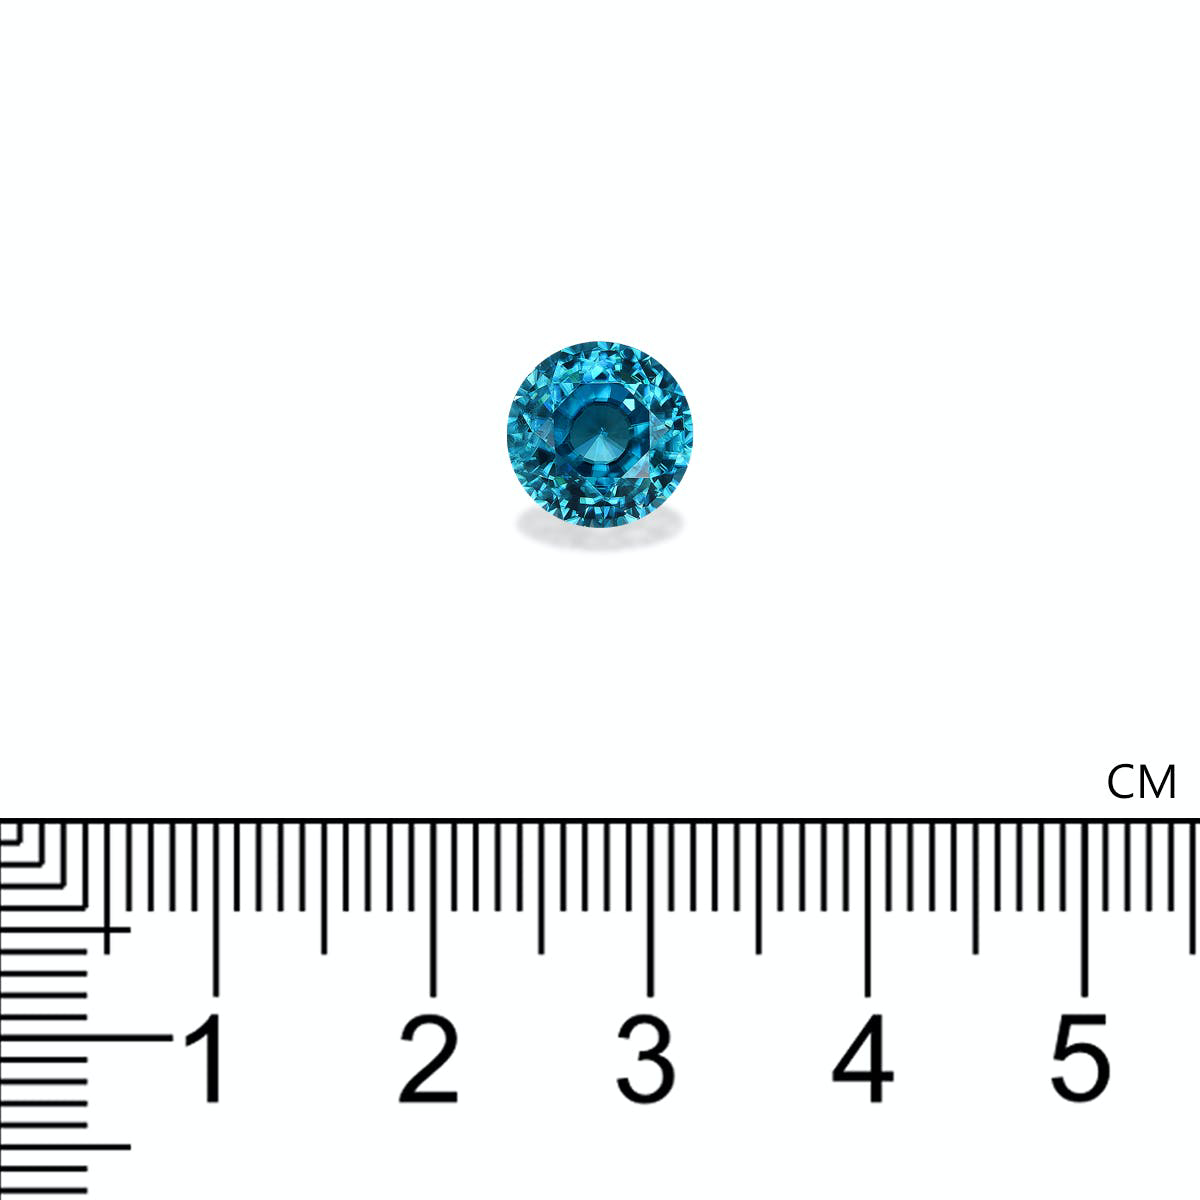 Cobalt Blue Zircon 4.51ct - 8mm (ZI0922)